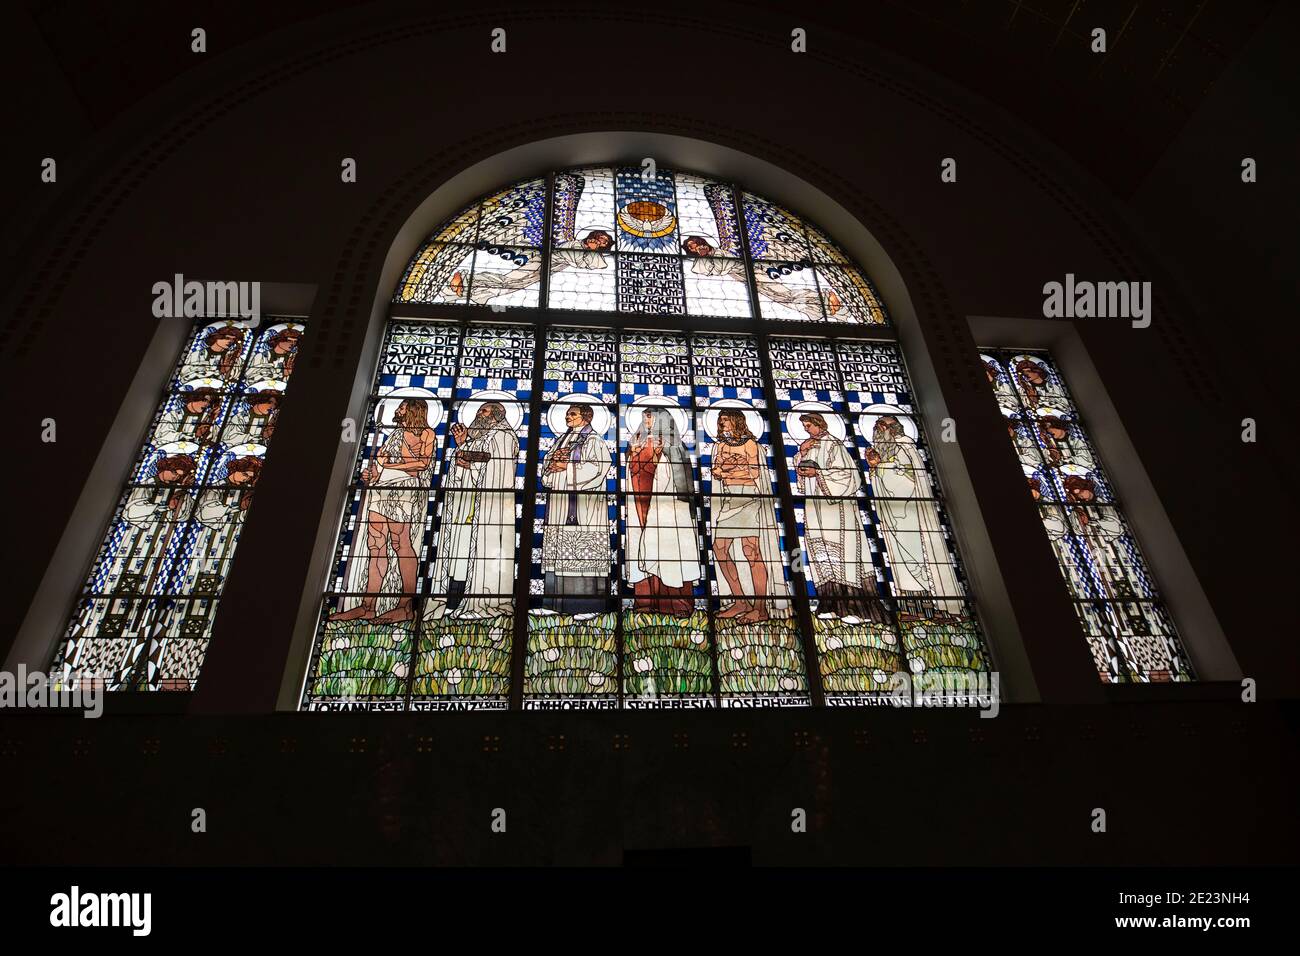 Das Jugendstil-Buntglasfenster von Koloman Moser in der Steinhof-Kirche St. Leopold in Penzing, Wien, Österreich. Stockfoto